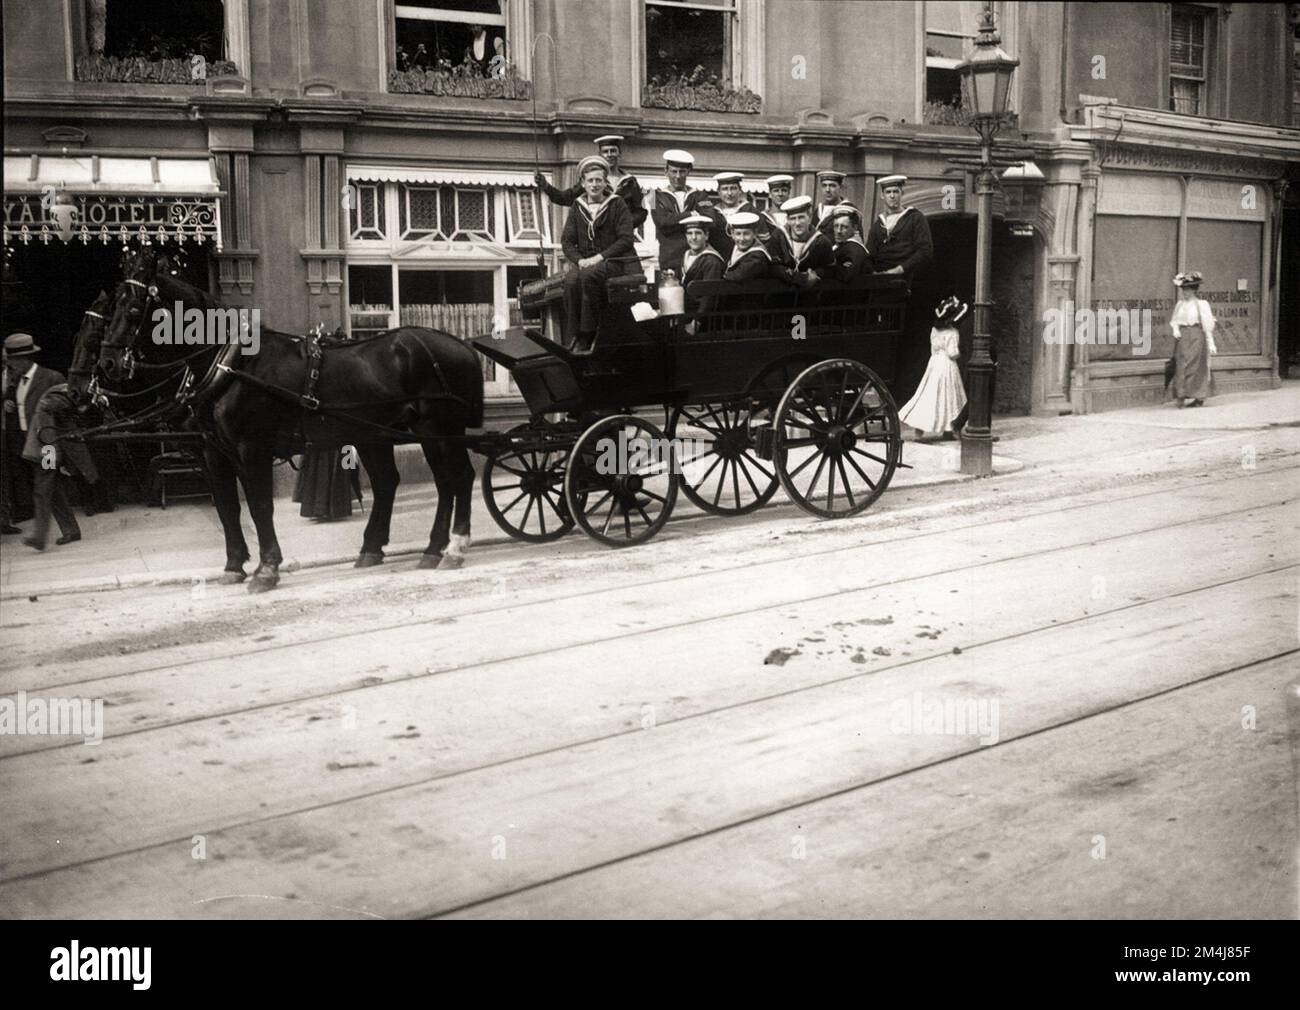 1900 ca , DEVON , INGHILTERRA , GRAN BRETAGNA : Un gruppo di marinai della Marina su una carrozza trainata da cavalli davanti all'ingresso DELL'IMPERIAL HOTEL a TORQUAY . Fotografo sconosciuto . - GRAND BRETAGNA - VIEW - FOTO STORICHE - STORIA - GEOGRAFIA - GEOGRAFIA - PANORAMA - PAESAGGIO - OTTOCENTO - OTTOCENTO - '800 - EPOCA VITTORIANA - EROE VITTORIANO - BELLE EPOQUE - ALBERGO - ARCHITETTURA - ARCHITETTURA - marinai - Marina militare - divisa - unifoirme - militare Uniforme - gita - tour - giostra trainata da cavalli - divertimento - divertimento - sorriso - sorriso - sorriso - strada - via --- Archivio GBB Foto Stock